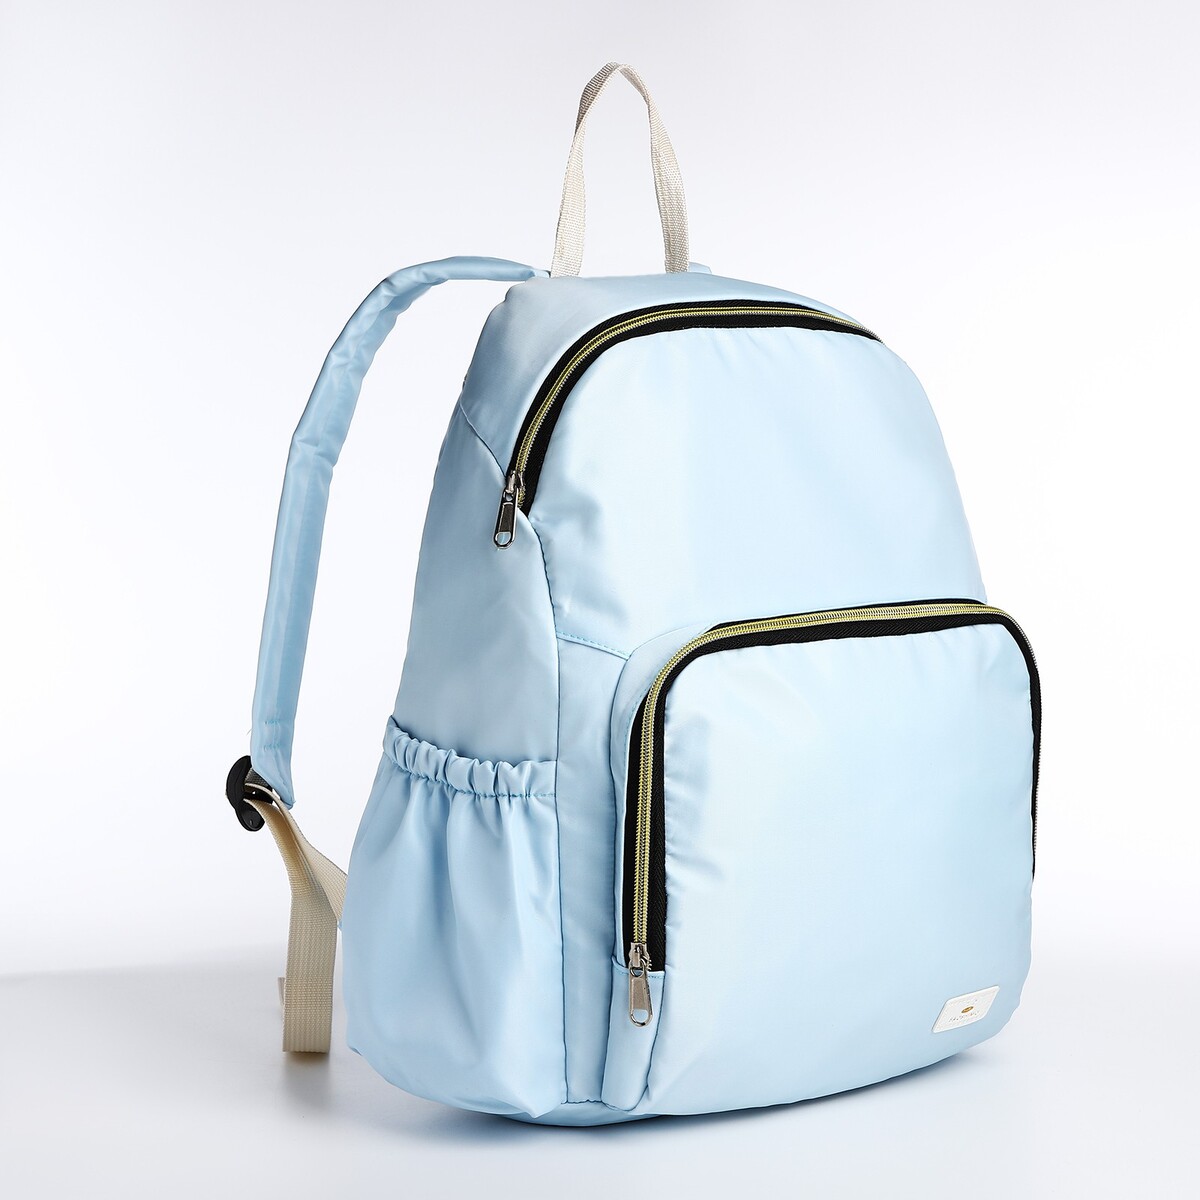 Рюкзак на молнии, цвет голубой рюкзак kingkong i 10 wb 9062 черн средний фоторюкзак